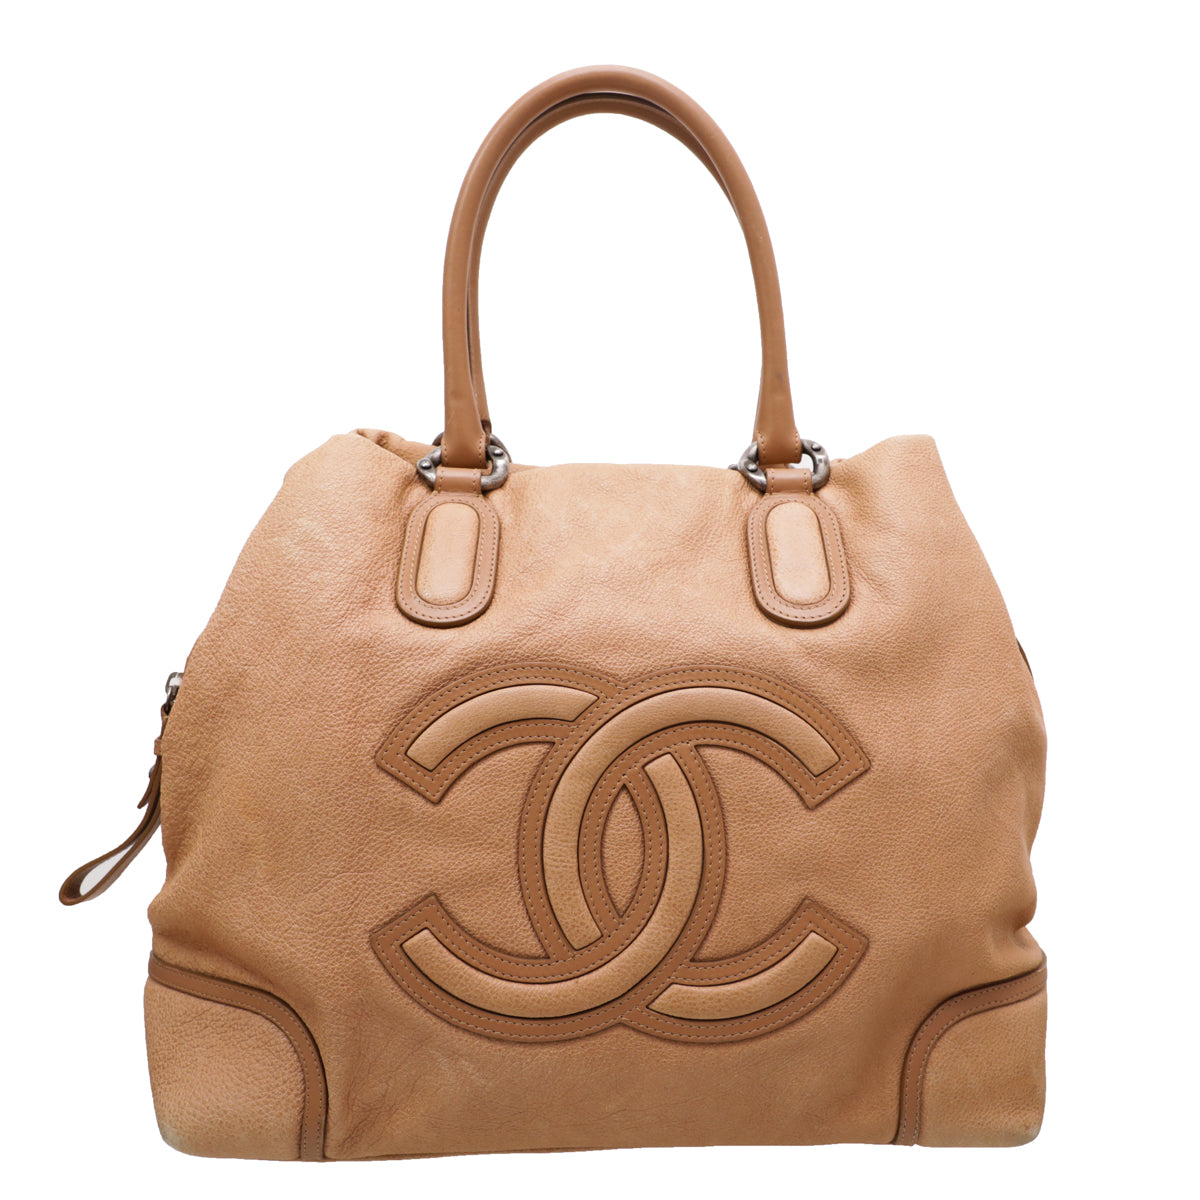 Chanel Camel CC Spring 2011 Tote Bag – The Closet